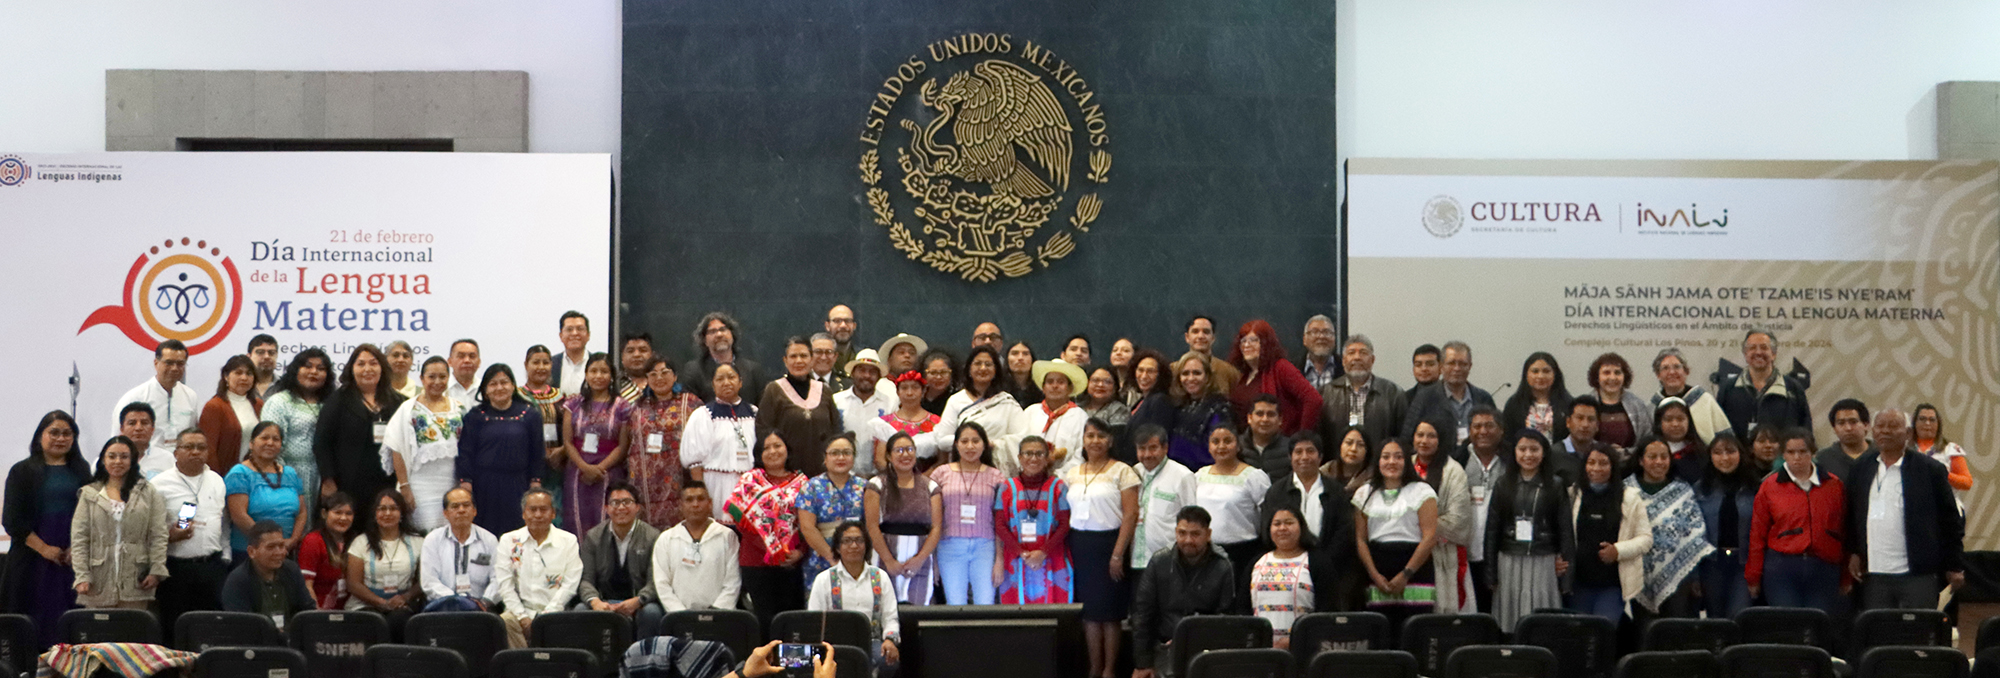 La Secretaría de Cultura, a través del Inali, conmemora el Día Internacional de la Lengua Materna 